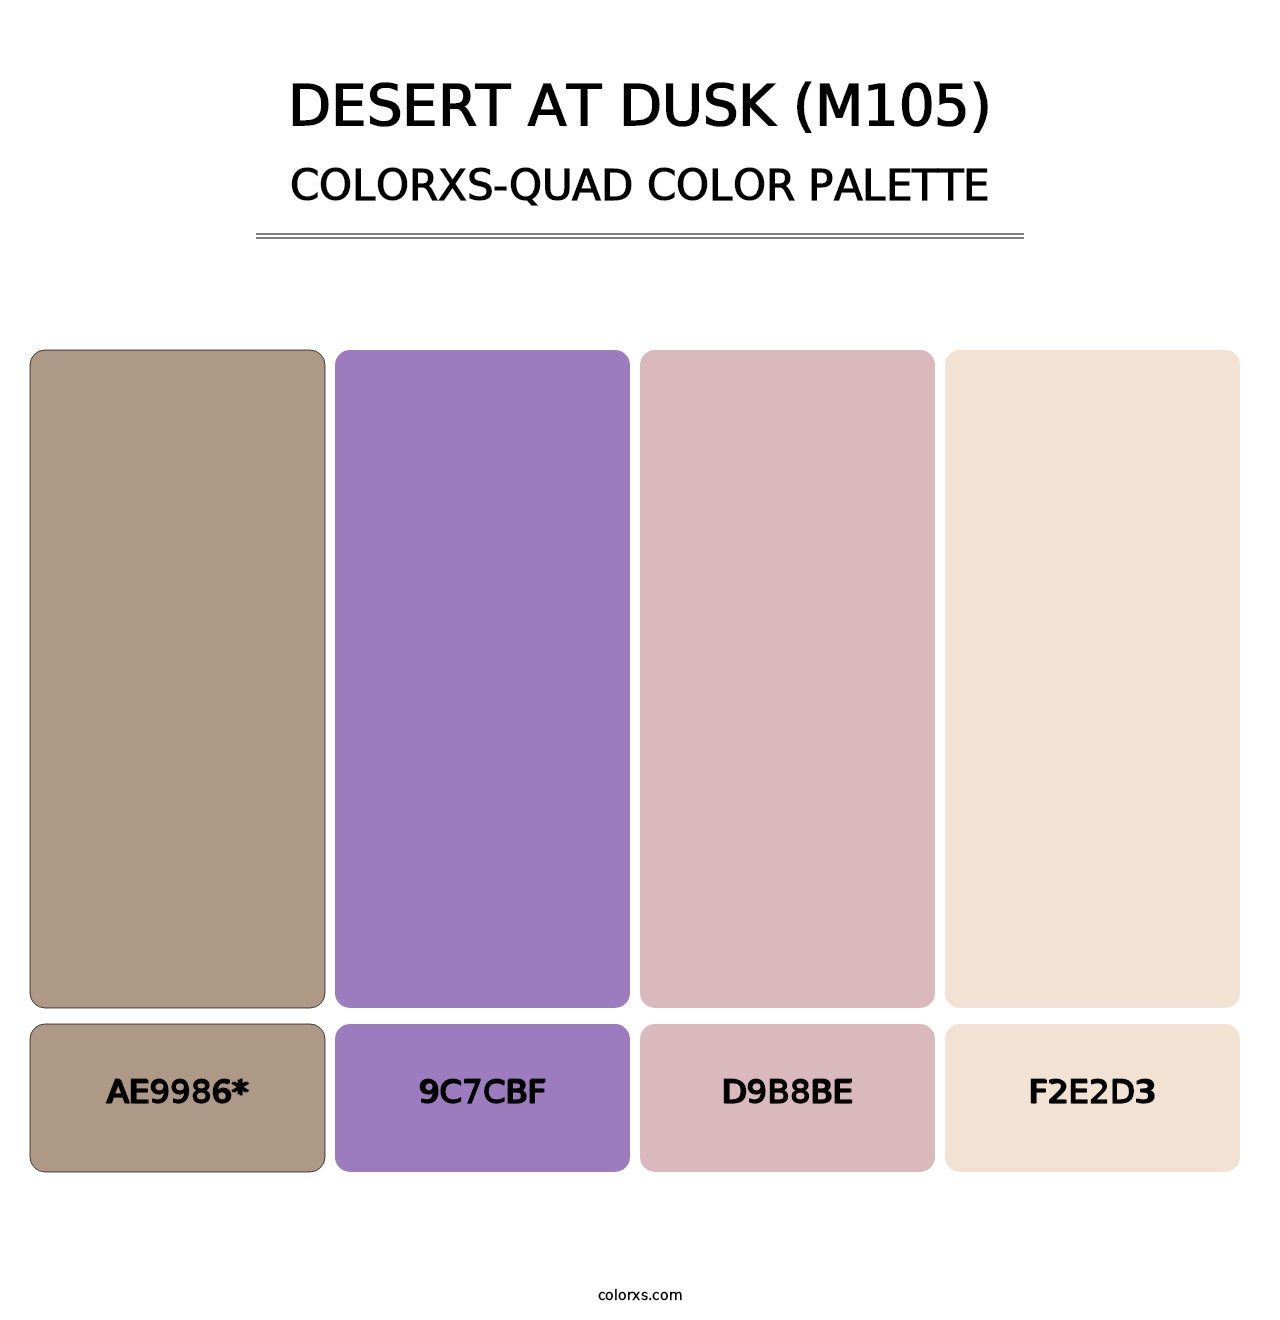 Desert at Dusk (M105) - Colorxs Quad Palette